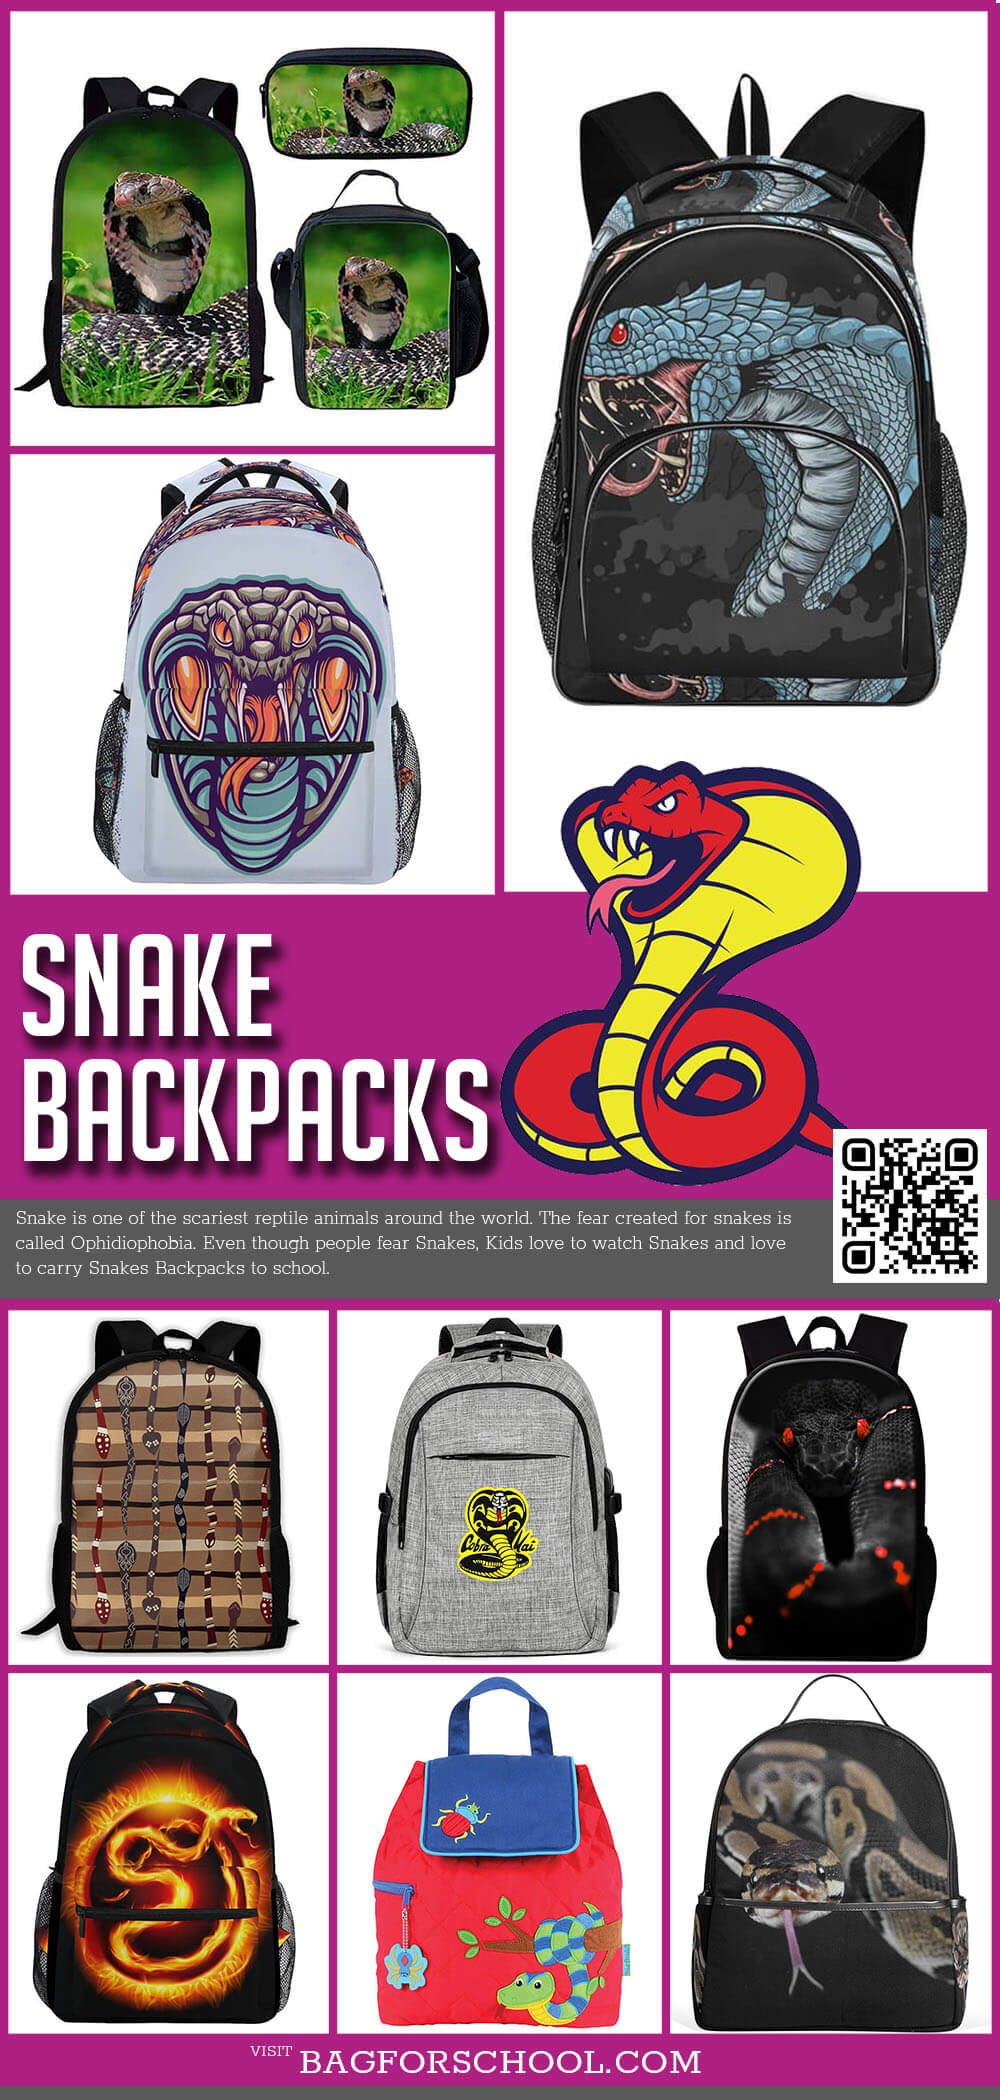 Snake backpacks